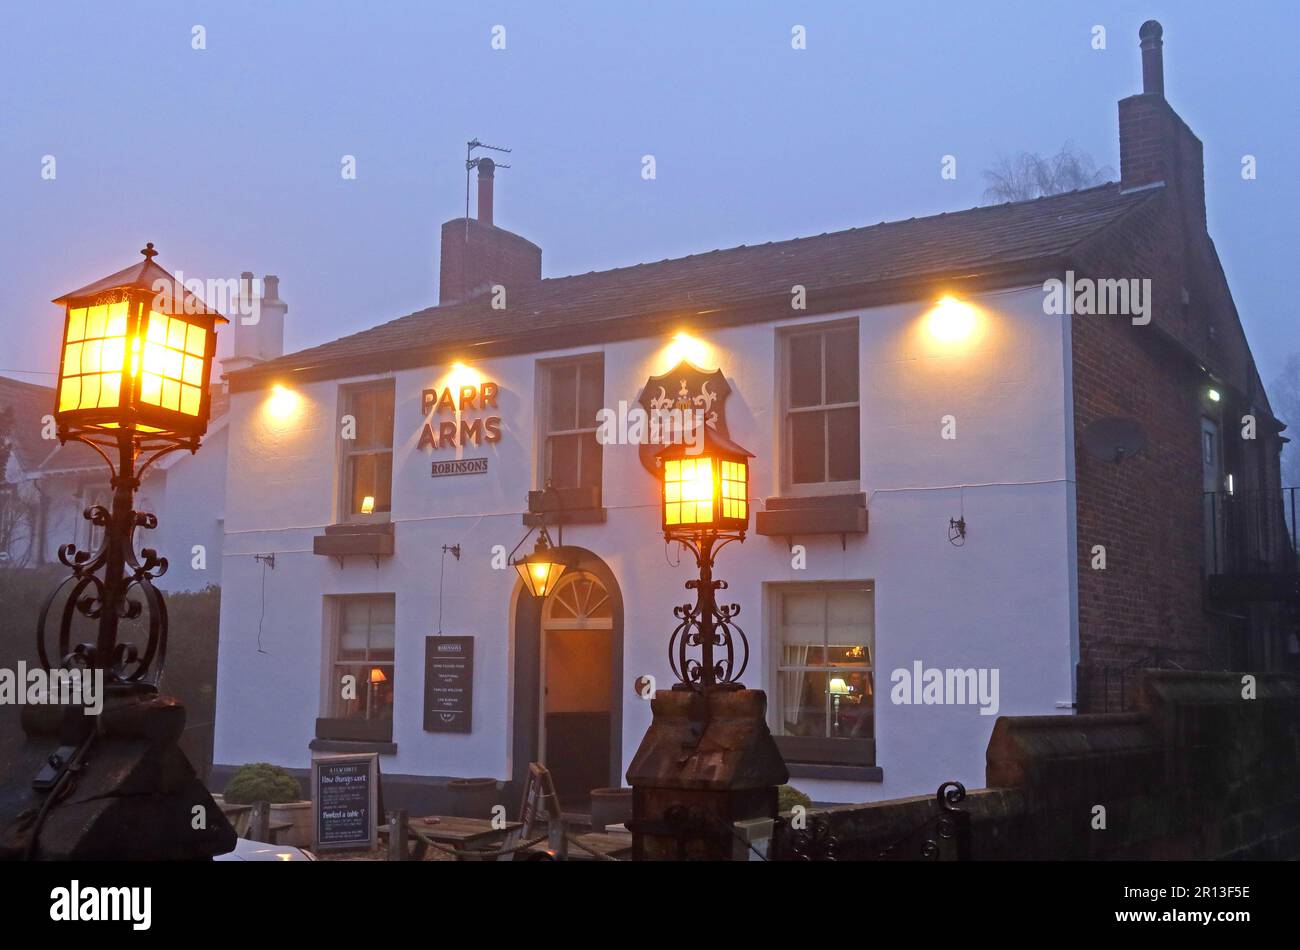 Le pub Parr Arms dans le brouillard d'hiver au crépuscule, Church Lane, Grappenhall, Warrington, Cheshire, ANGLETERRE, ROYAUME-UNI, WA4 3EP Banque D'Images